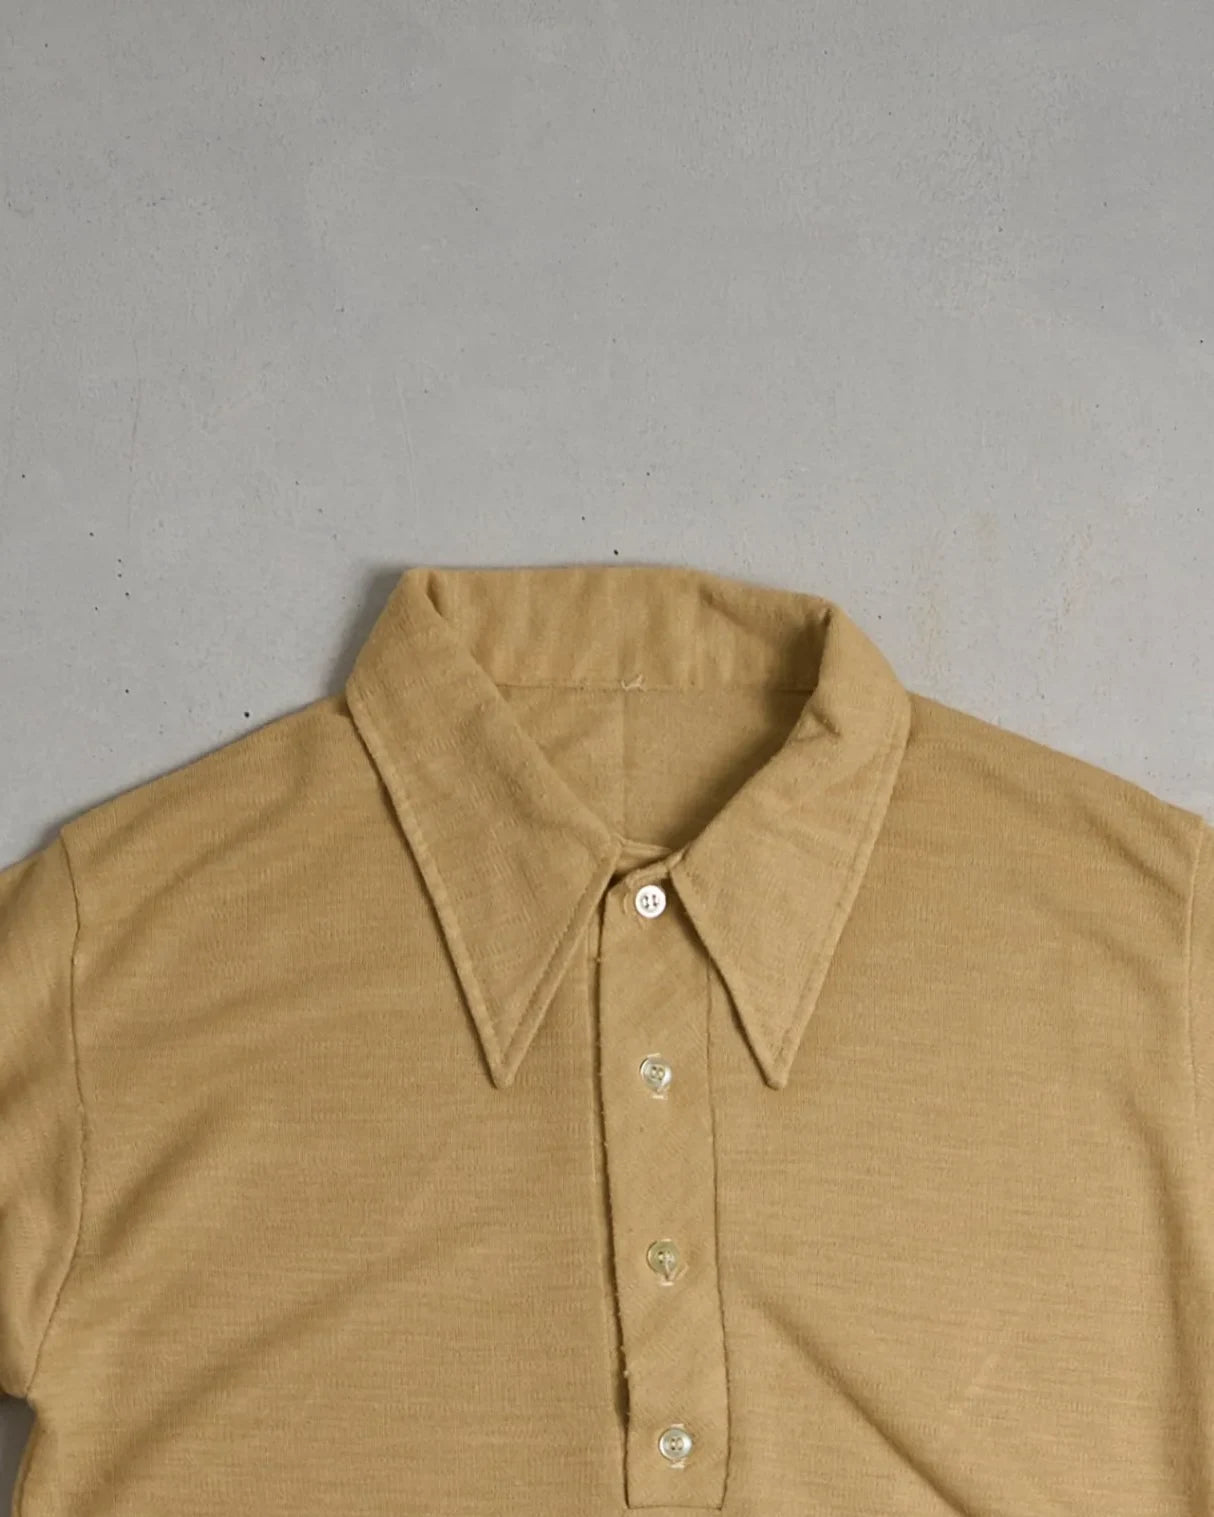 Vintage Polo Shirt Top